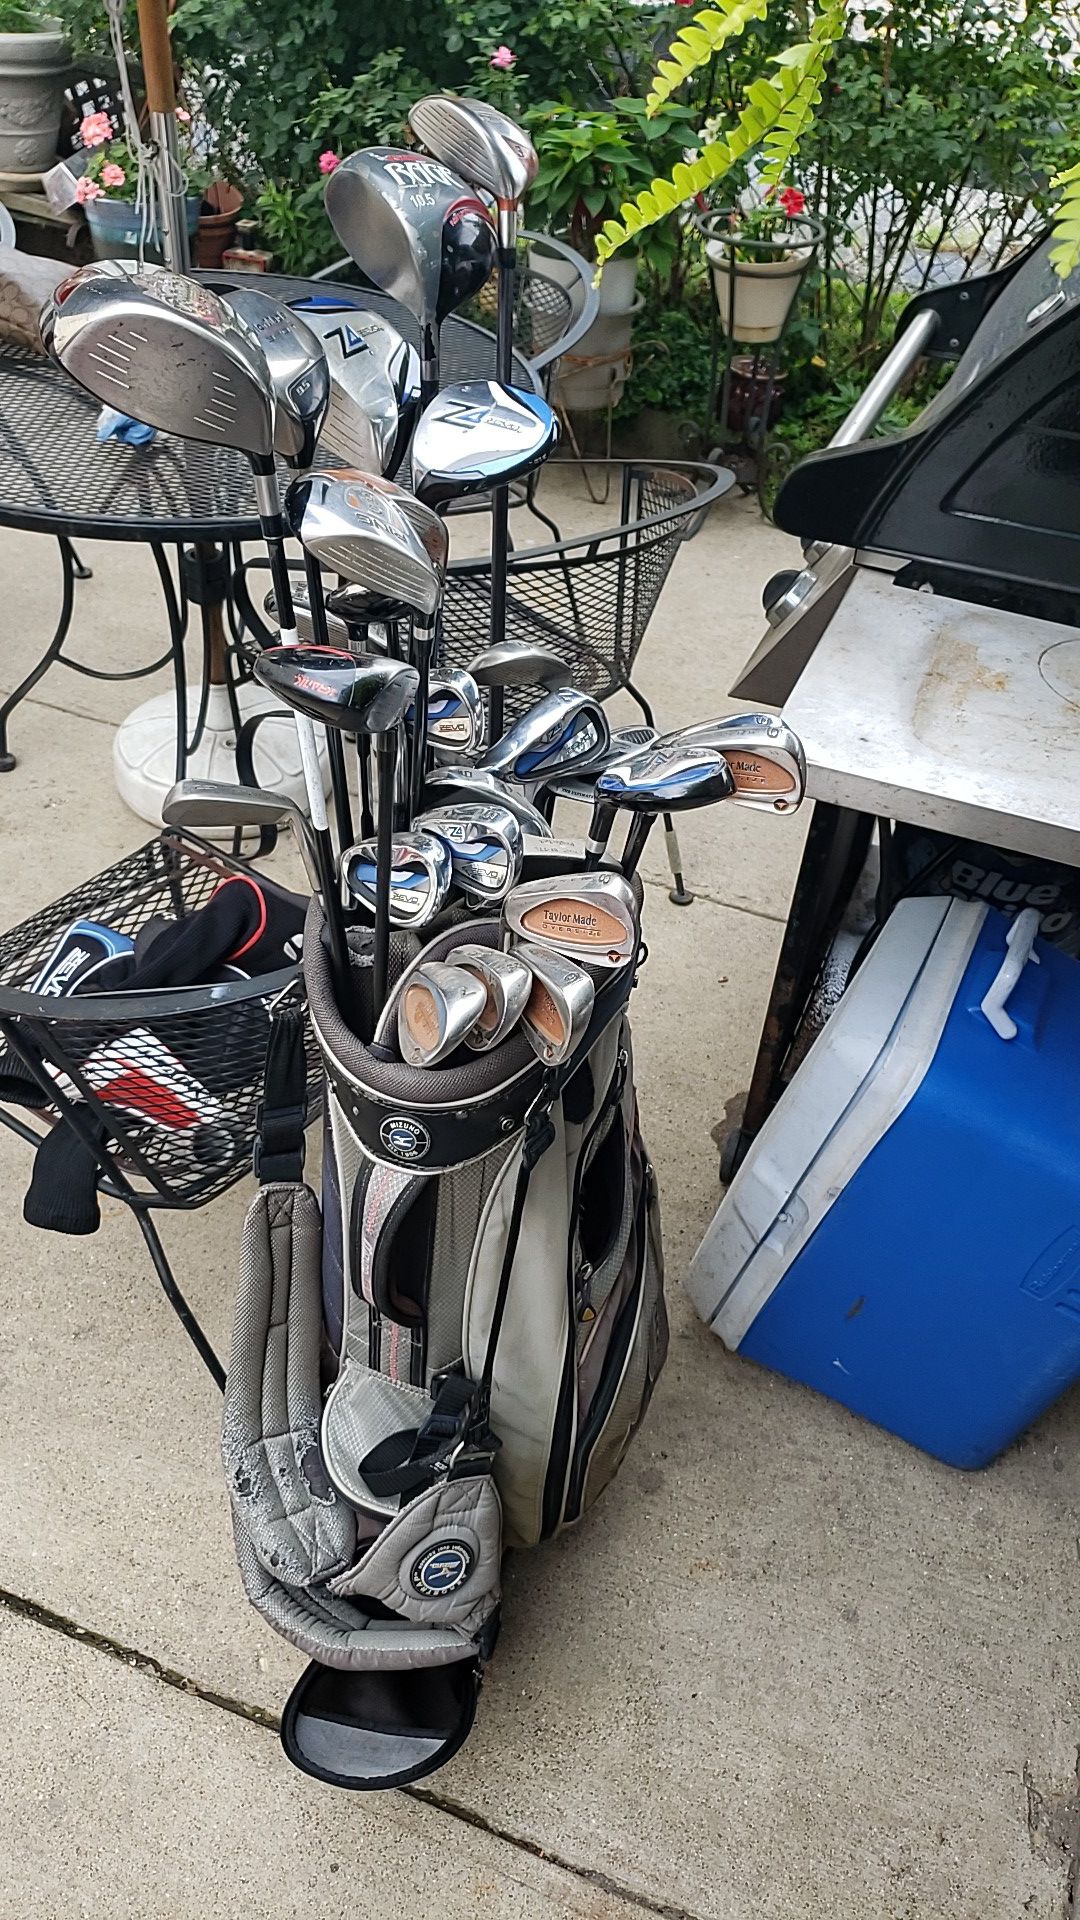 bag of left handed golf clubs.